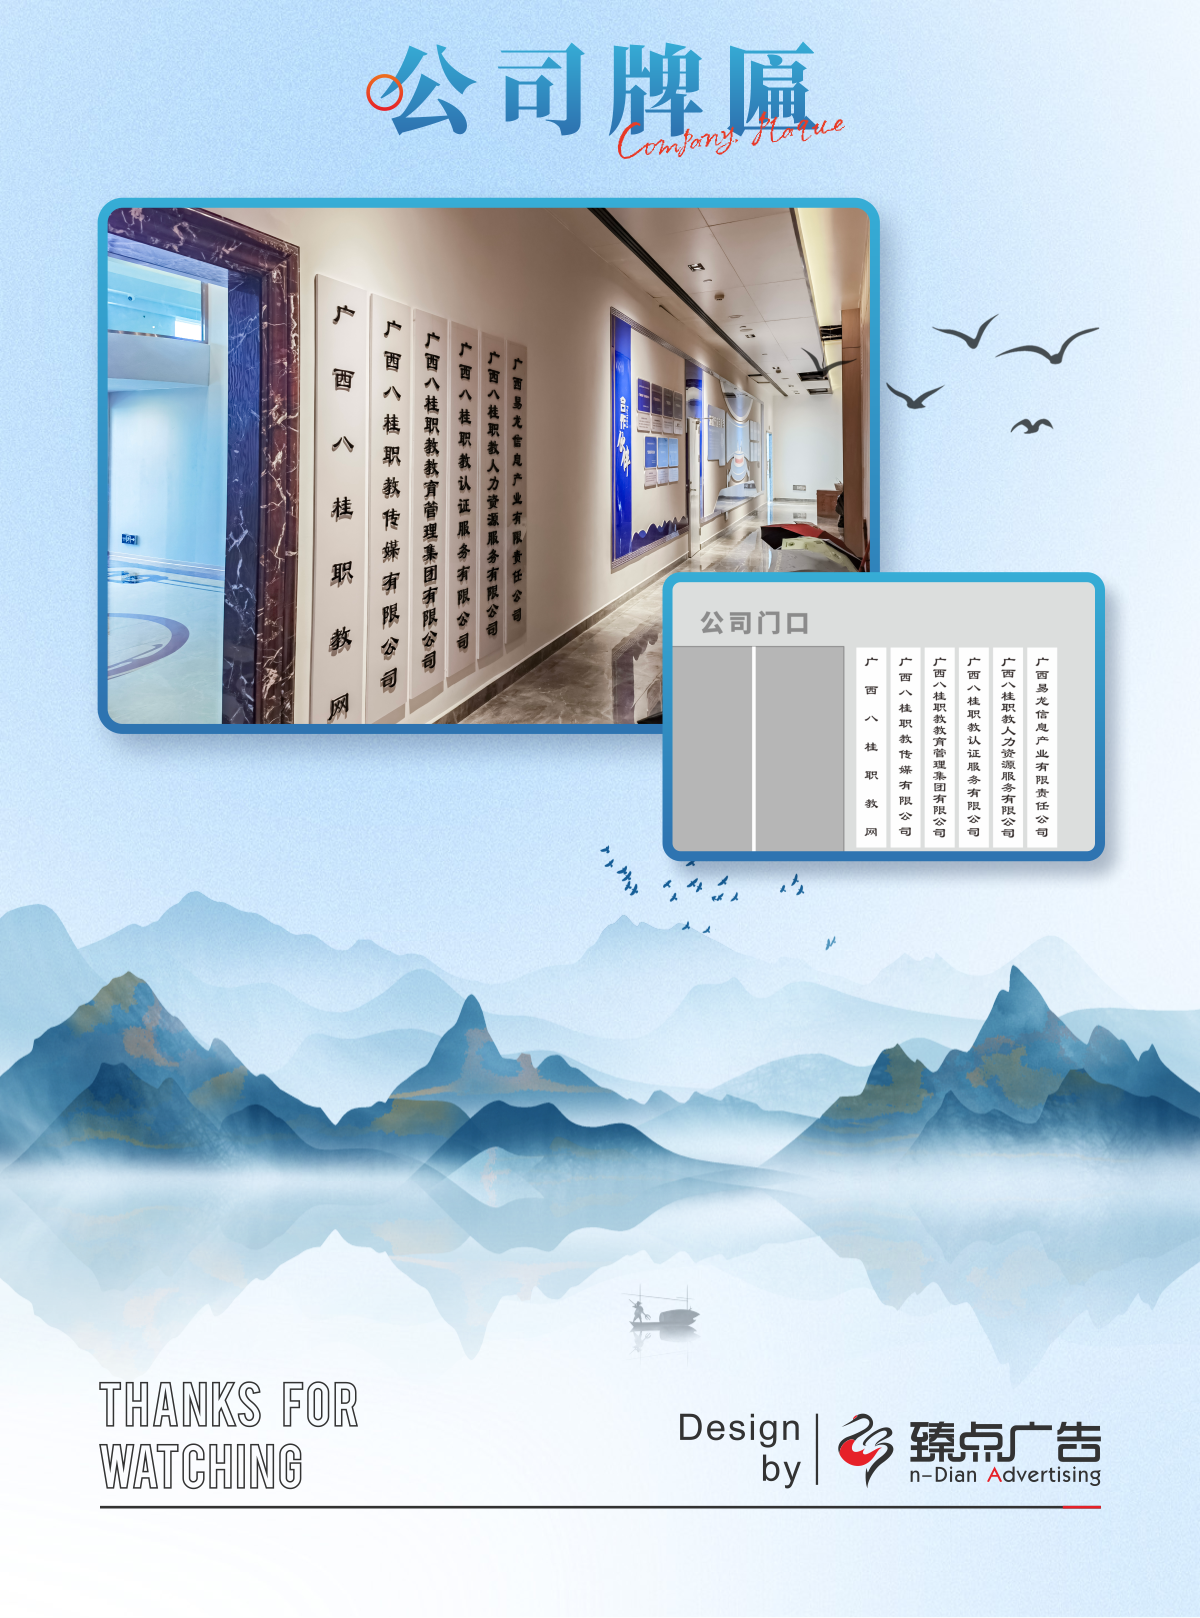 八桂职教网文化走廊企业文化墙设计制作1_05.png